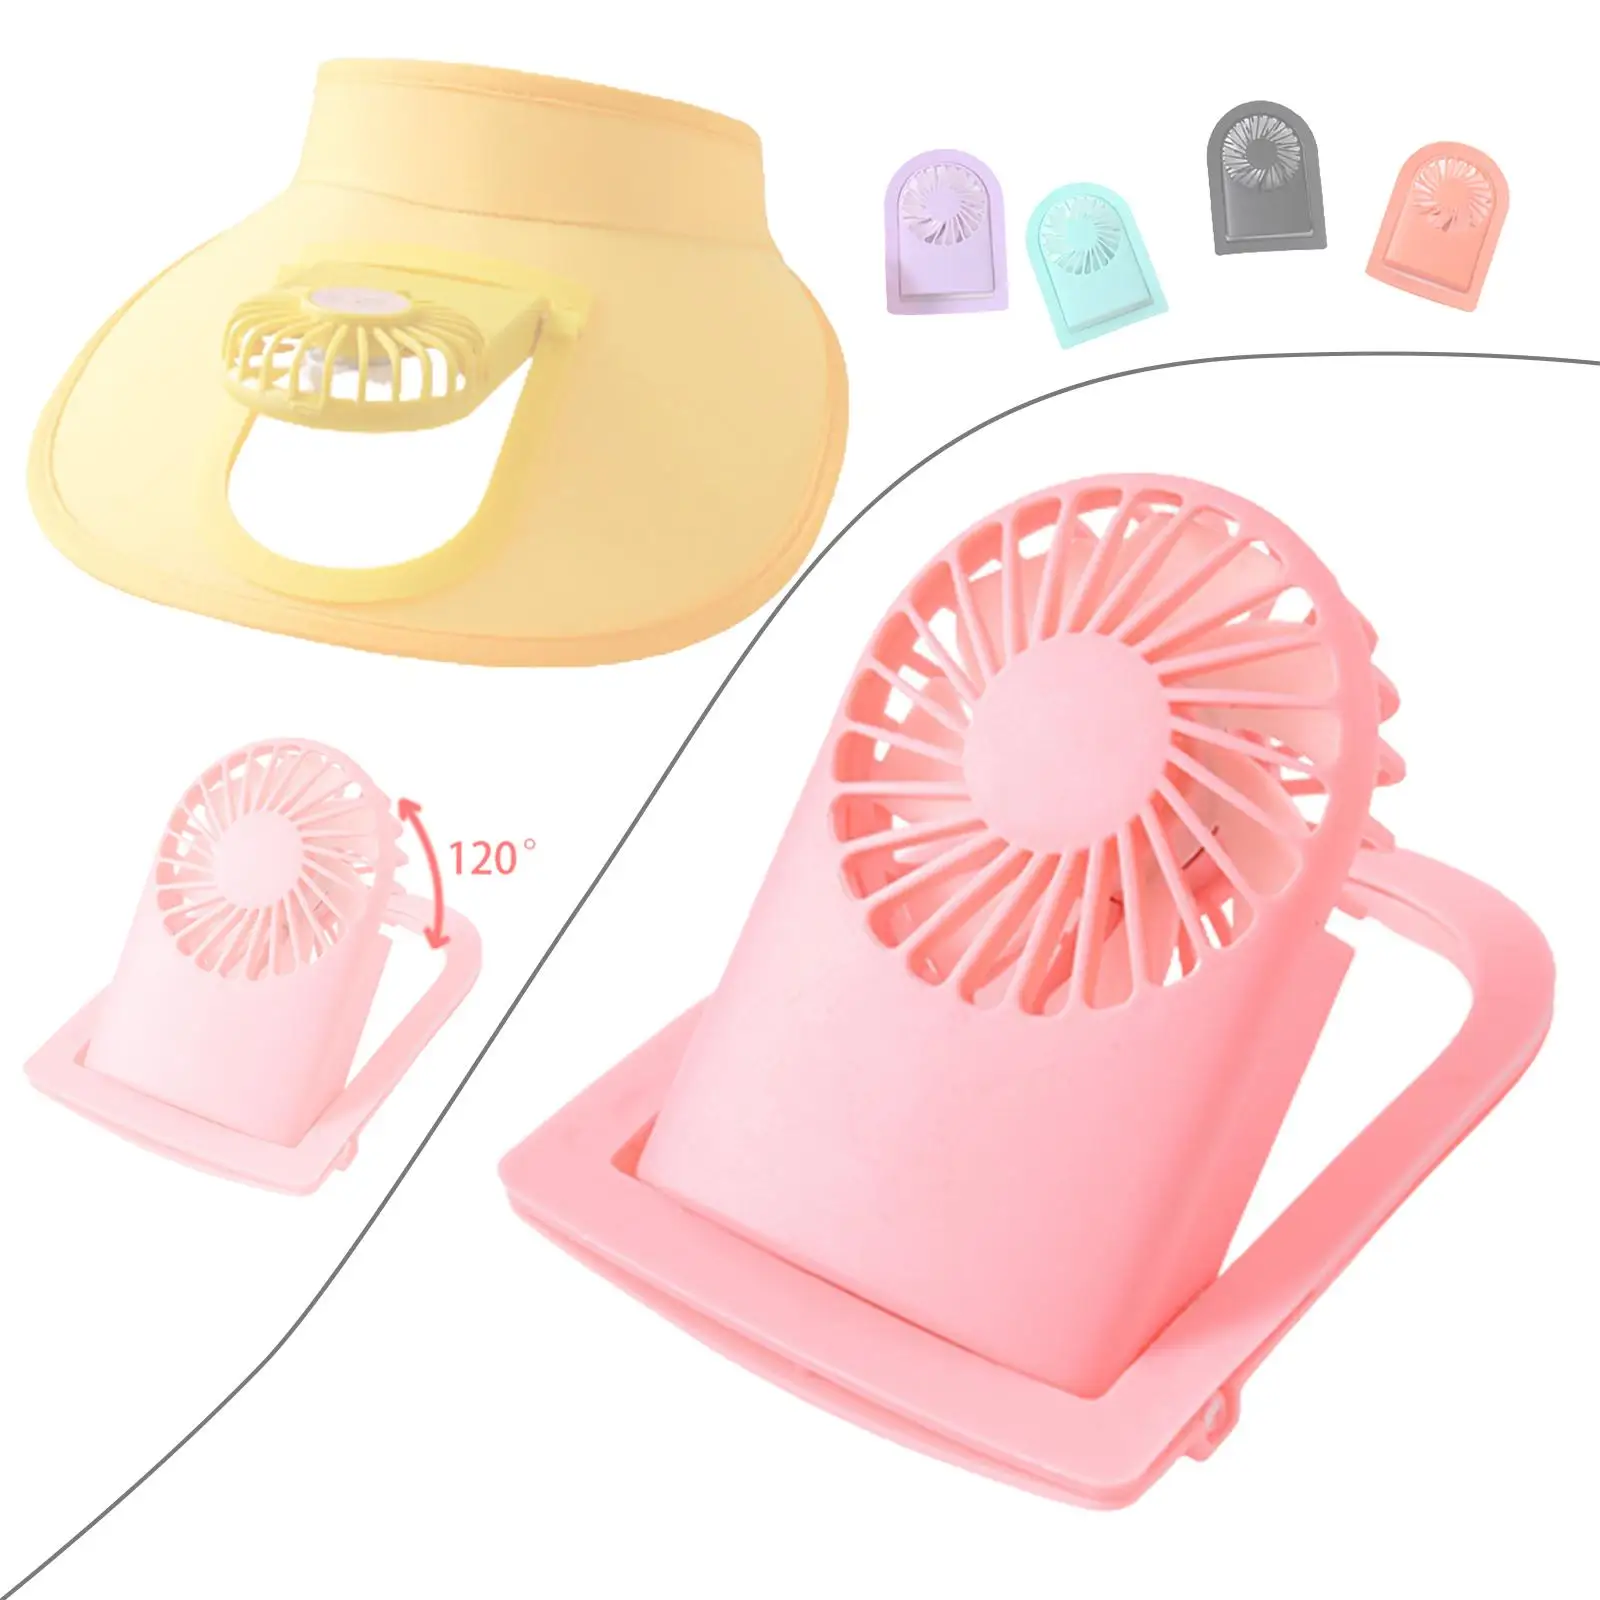 Персональный вентилятор Портативный вентилятор с козырьком Аксессуар для шляпы с регулируемым воздушным охлаждением с питанием от USB, 3 скорости, для походной кухни 1